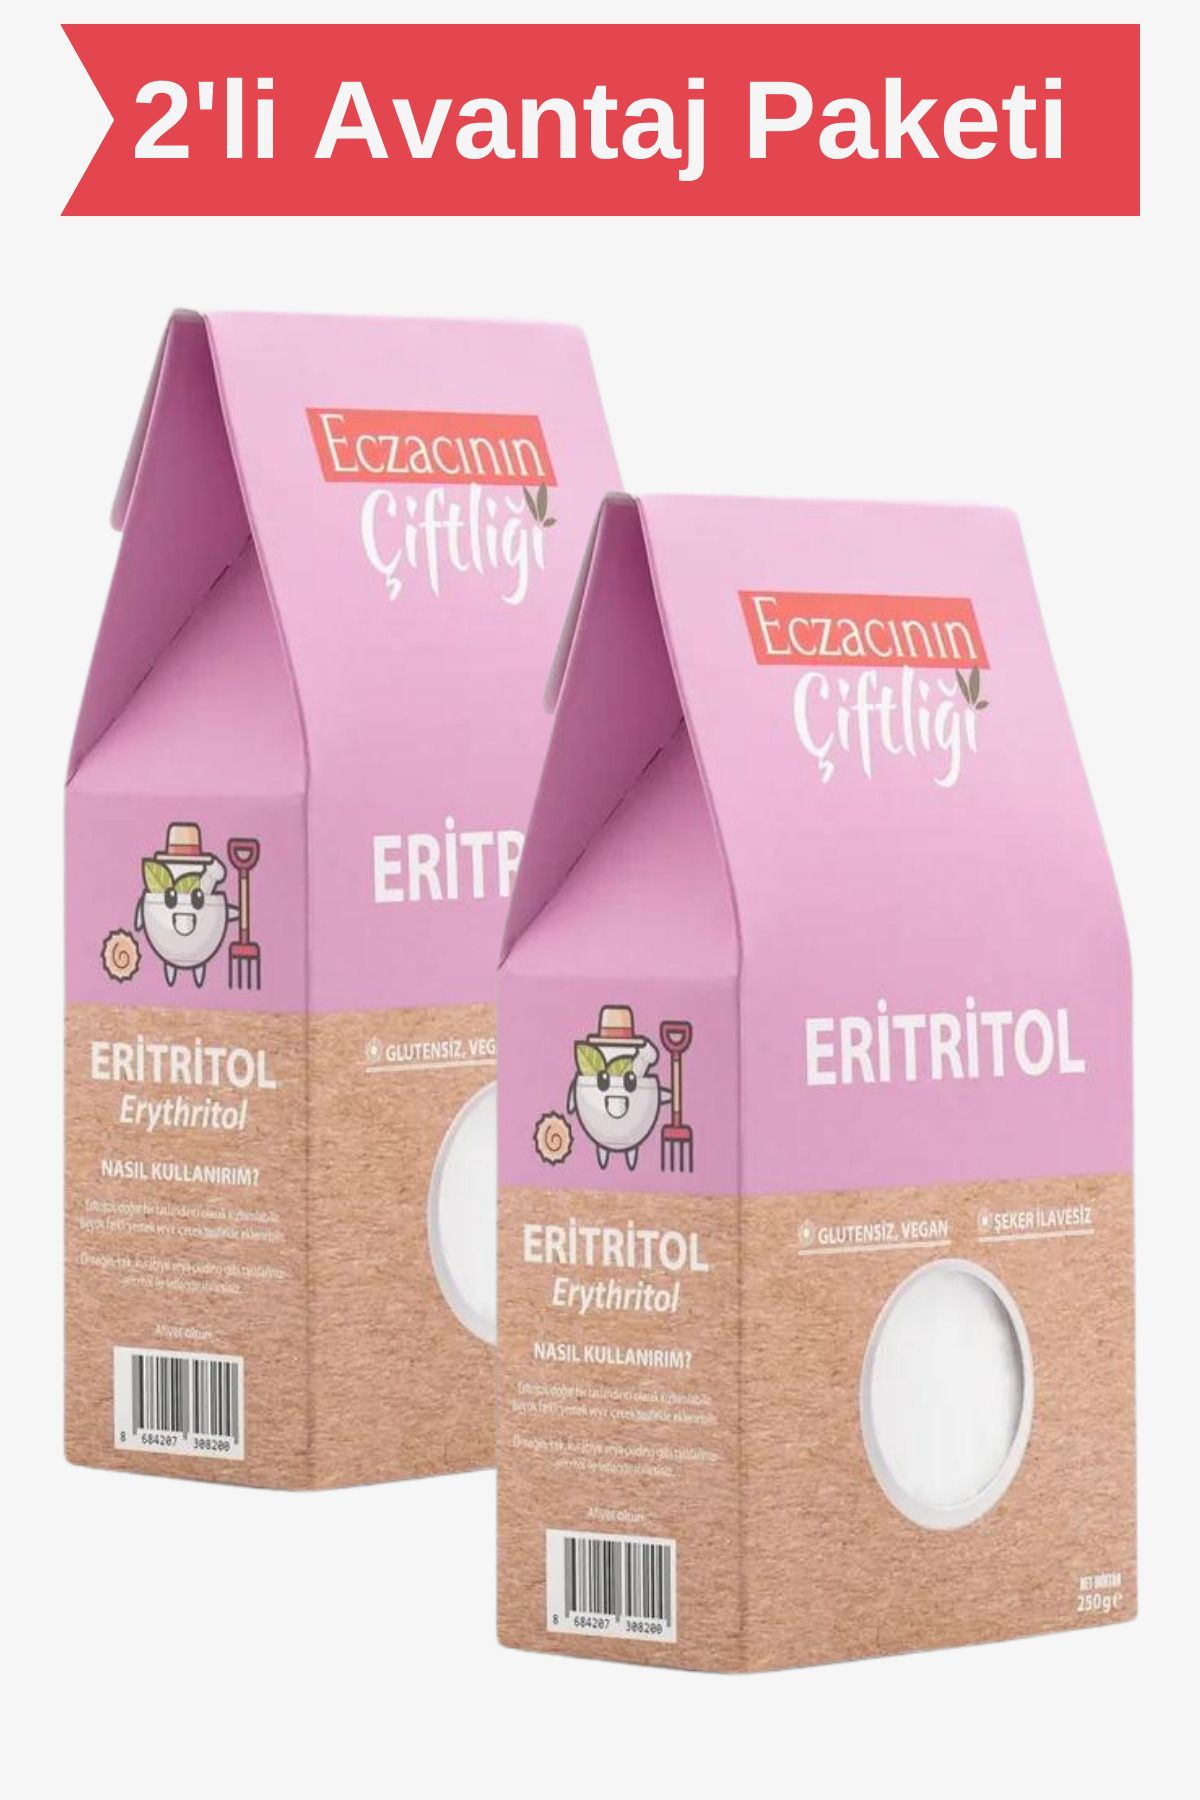 Eczacının Çiftliği Eritritol Doğal Tatlandırıcı 250 gr X 2 Adet - Erythritol / Ketojenik, Vegan Diyete Uygundur